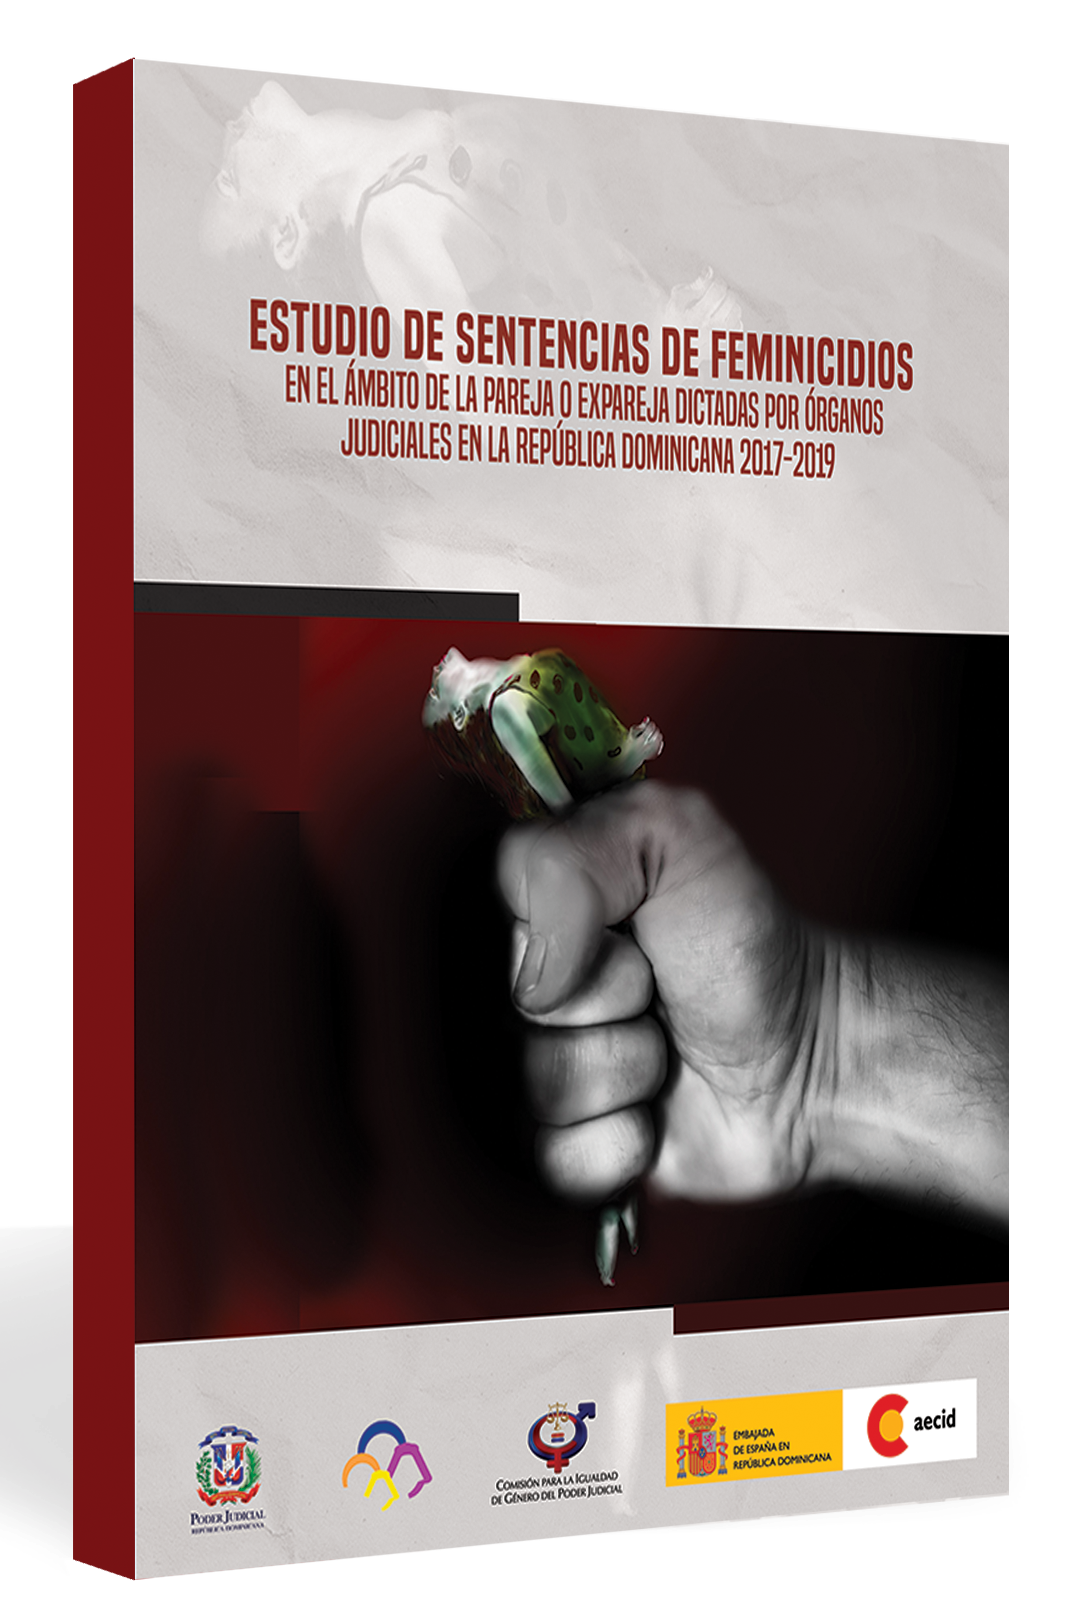 Estudio de sentencias de feminicidios en el ámbito de la pareja o expareja dictadas por órganos judiciales en la República Dominicana 2017-2019